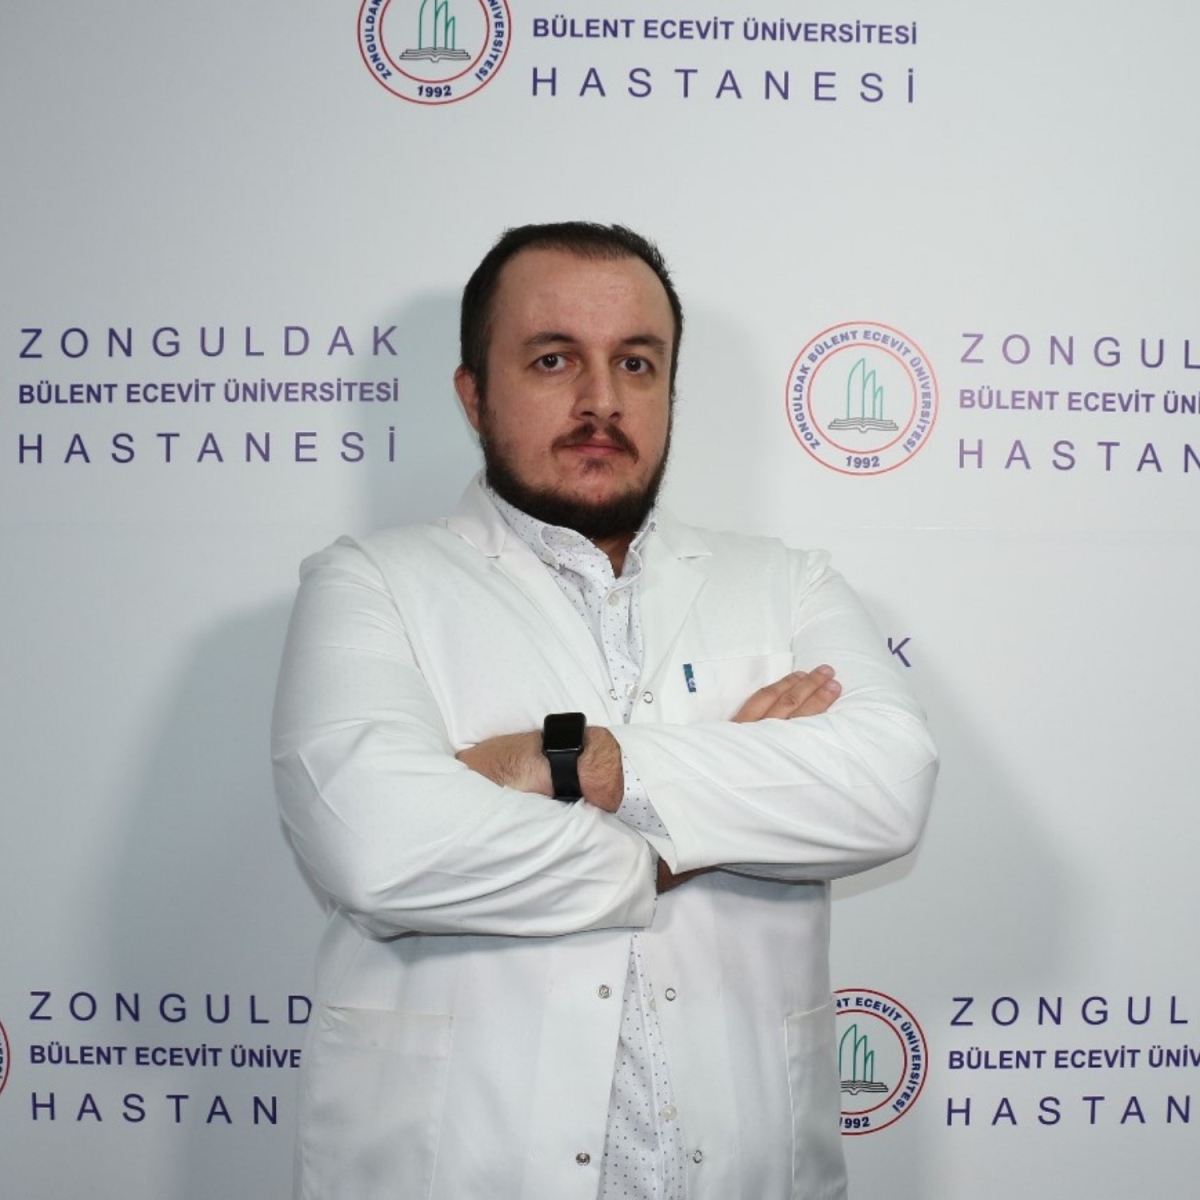 ZBEÜ Hastanesinde Yeni Tıbbi Onkolog hasta kabulüne başladı
